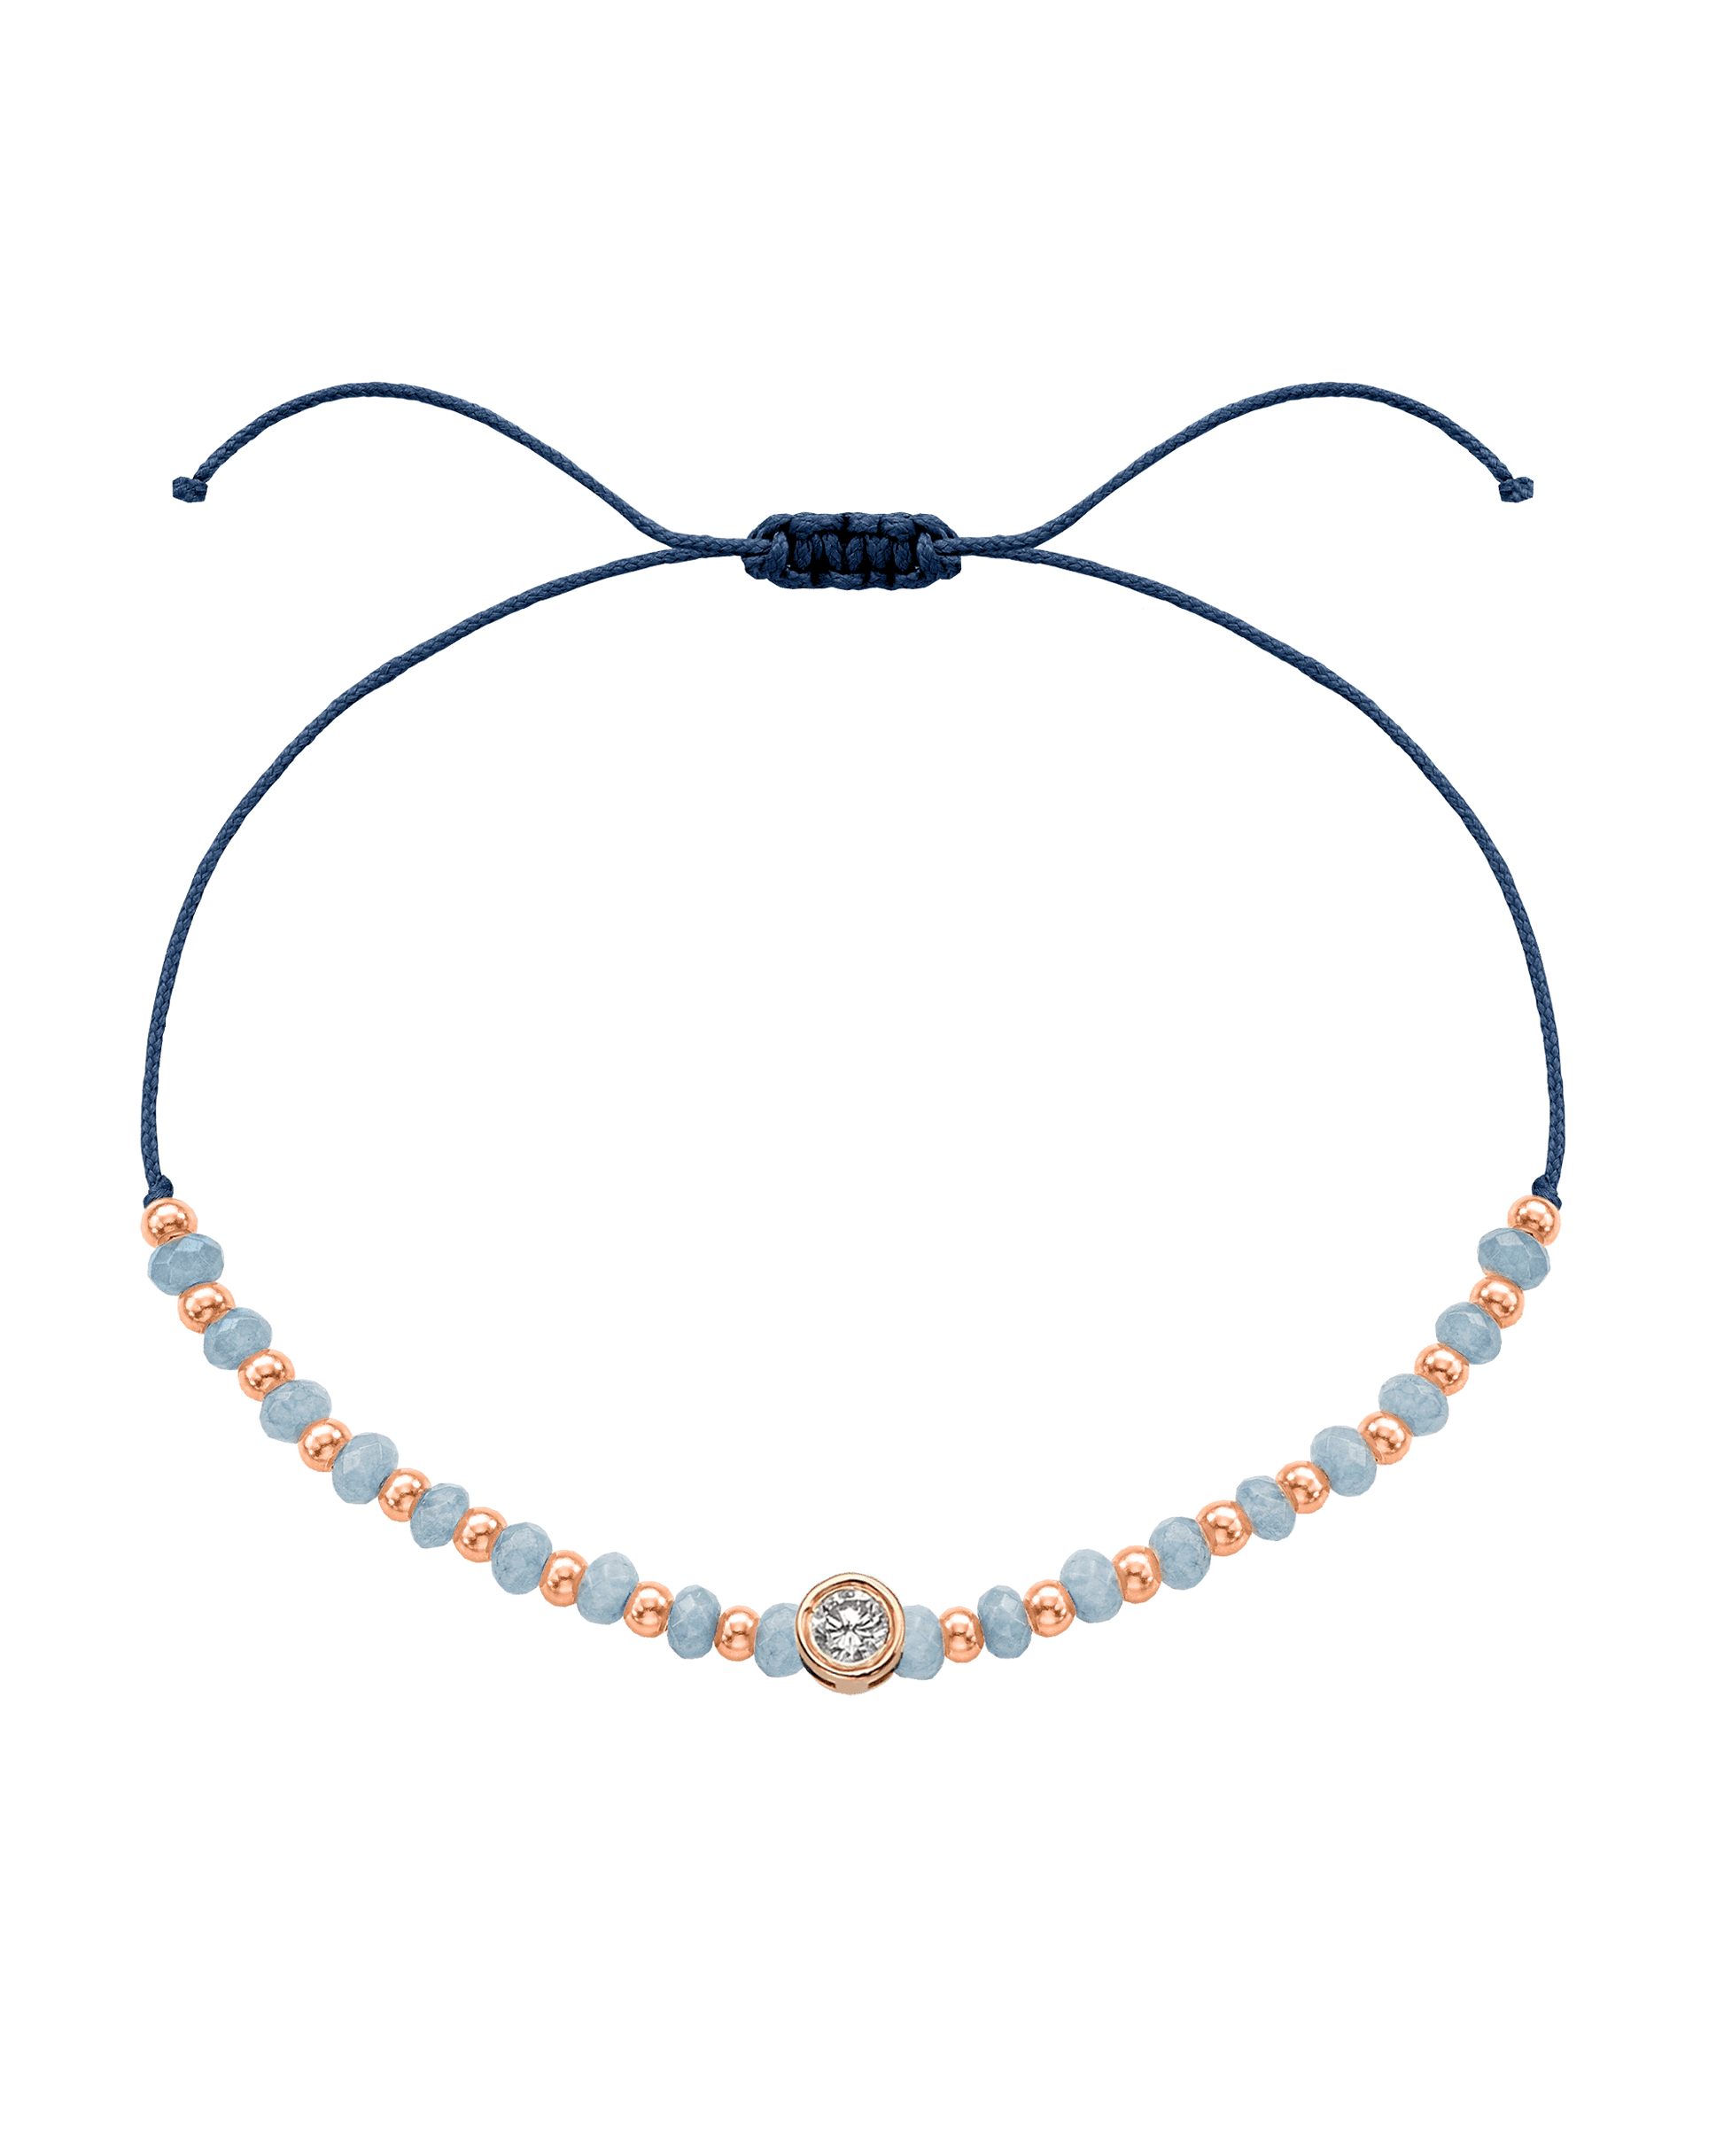 Celestite Gemstone String of Love Bracelet for Mindfulness - 14K Rose Gold Bracelets 14K Solid Gold Indigo Large: 0.1ct 